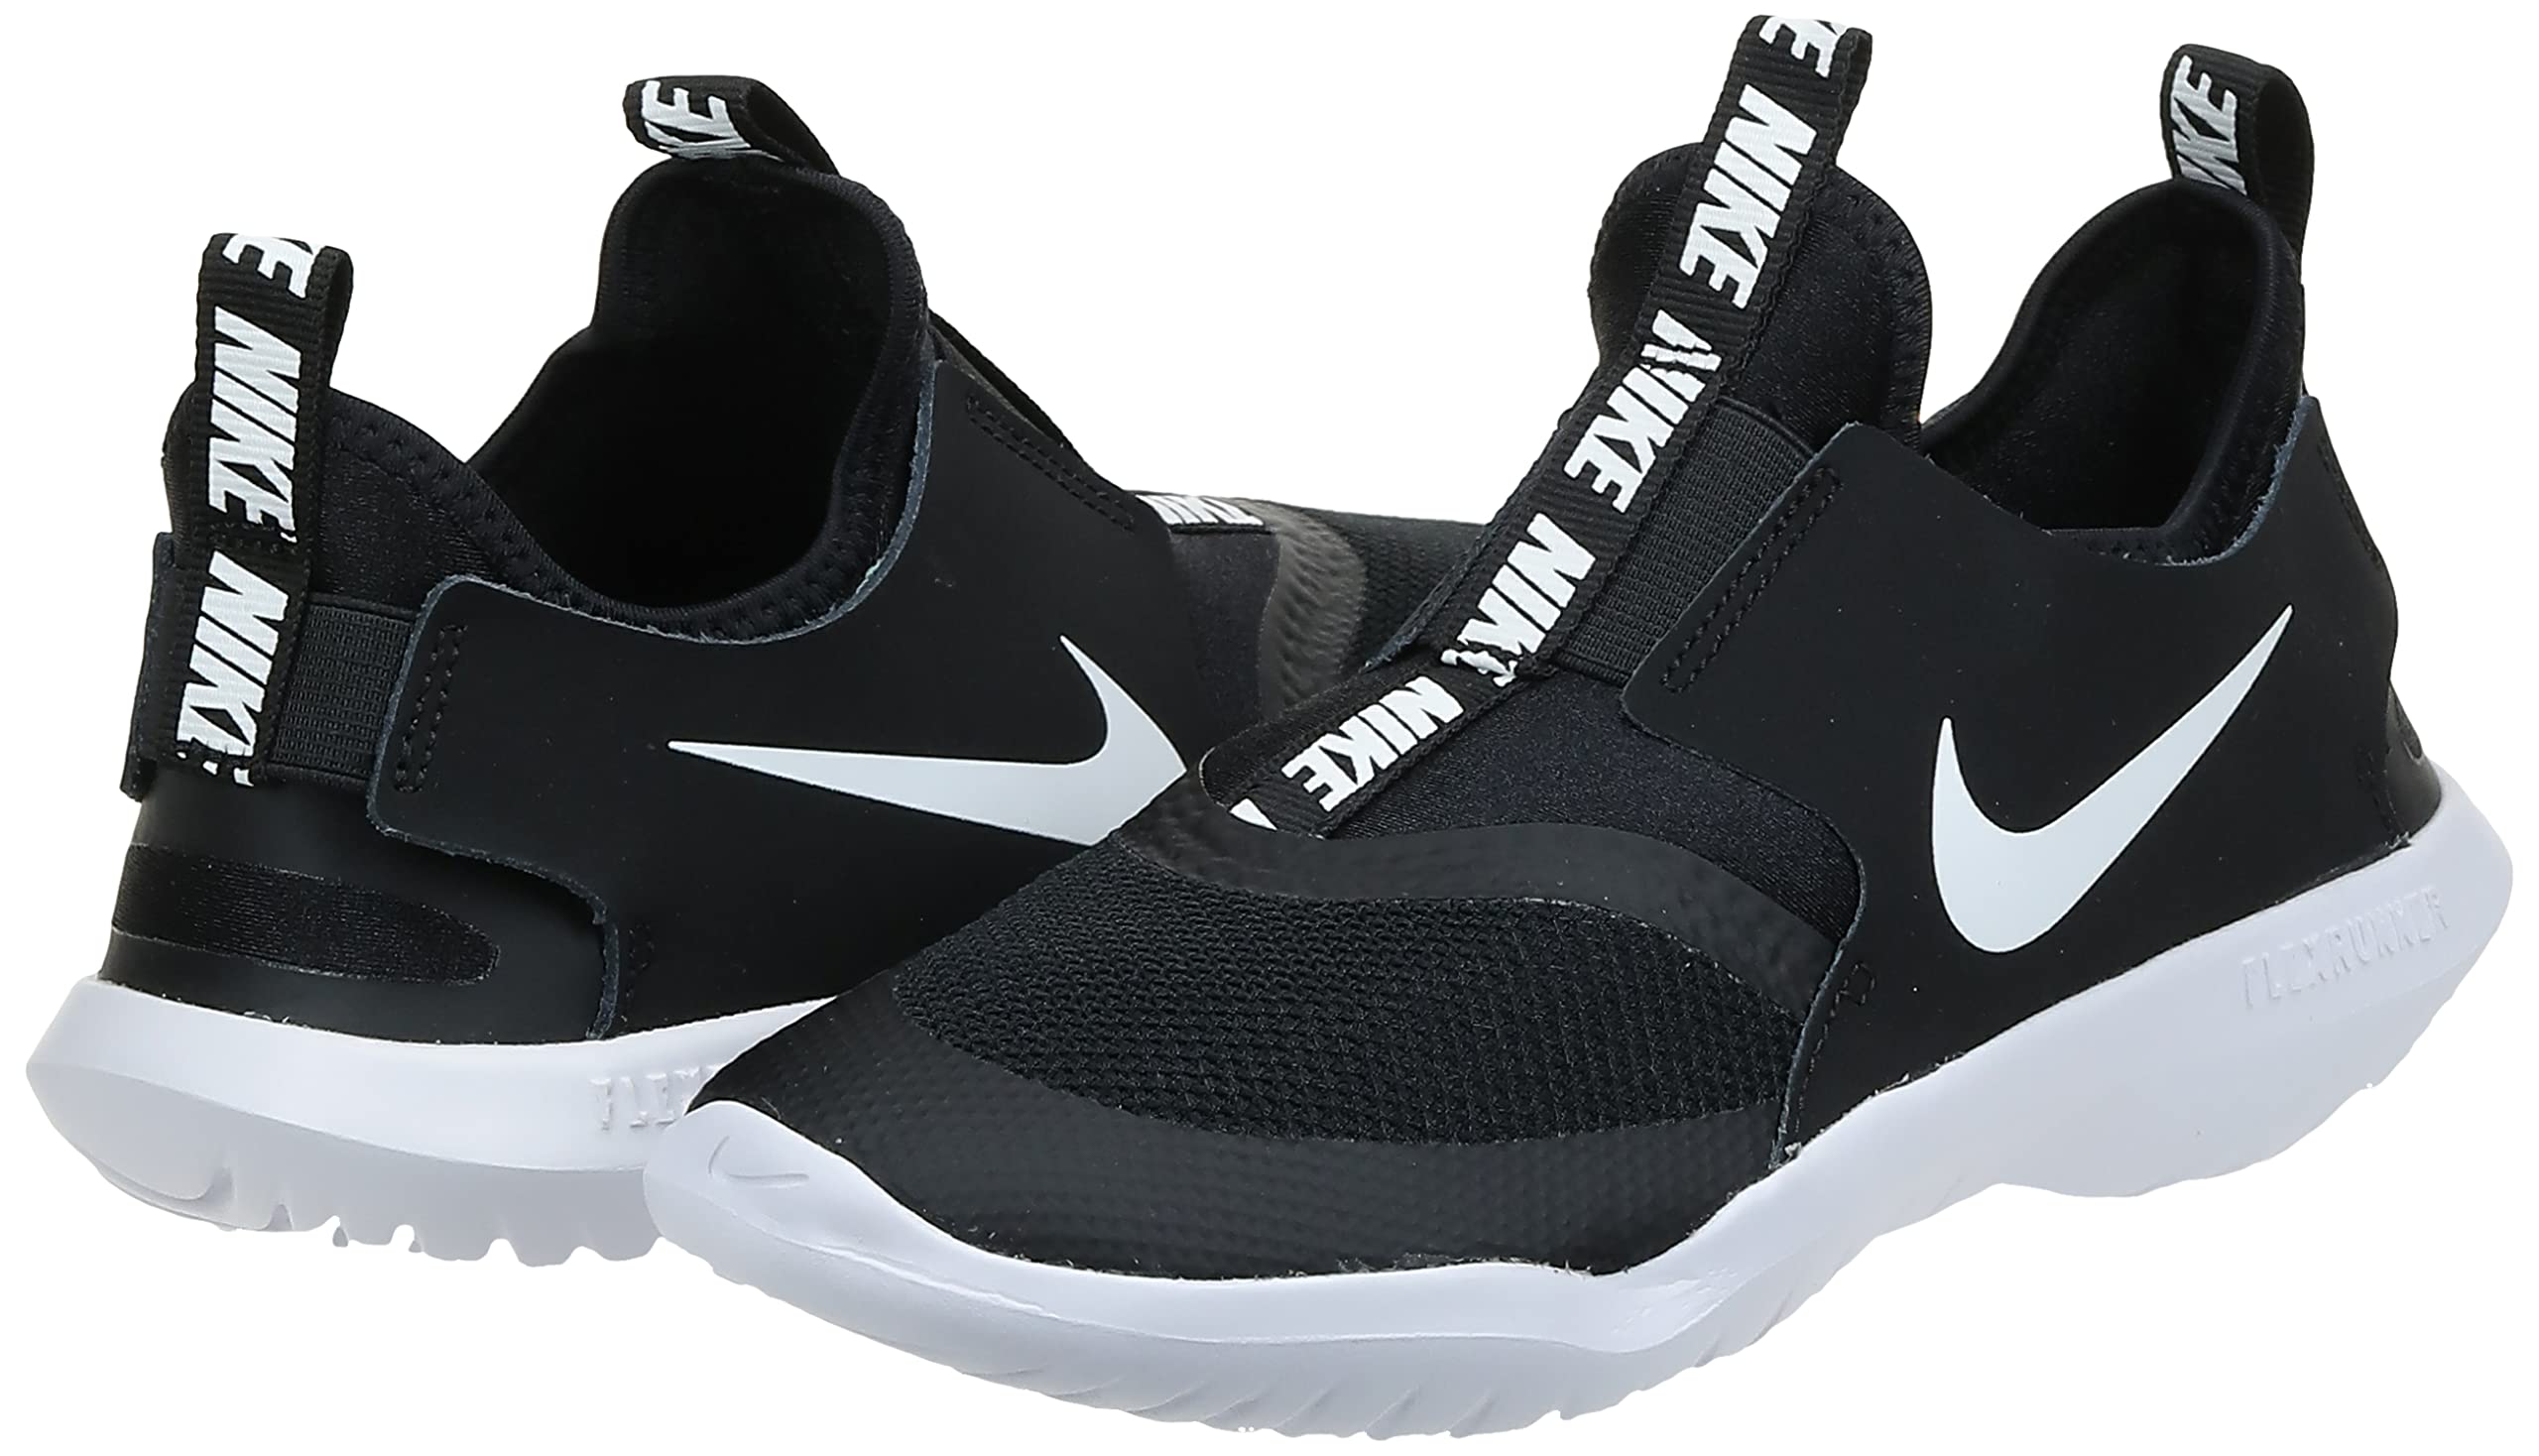 Nike Flex Runner (Infant/Toddler) Black/White 9 Toddler M